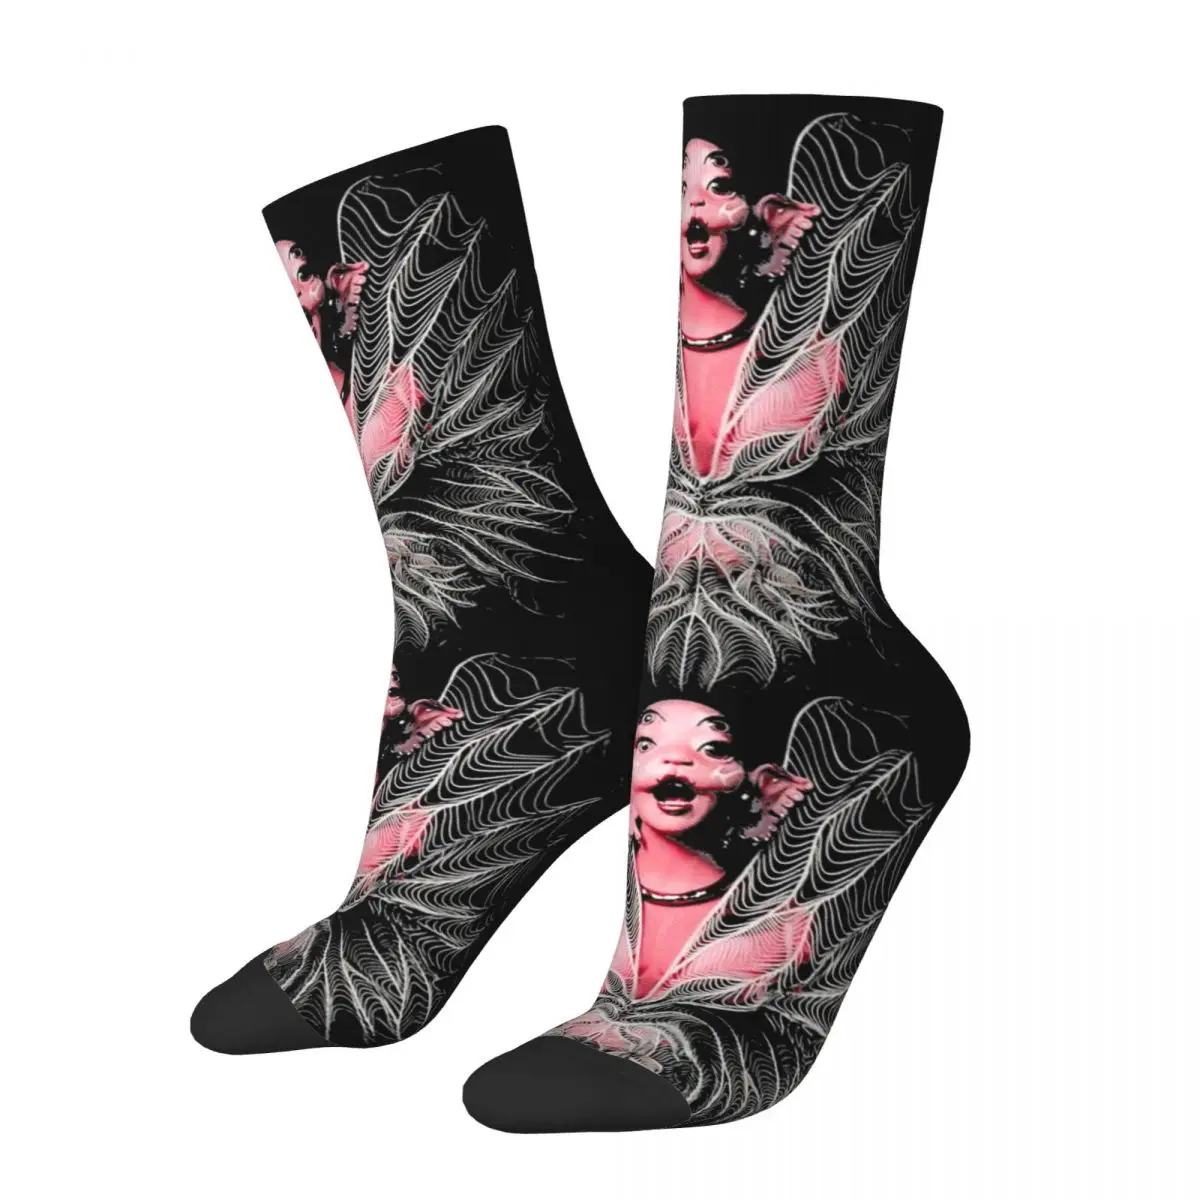 

Носки с крыльями пинкса, мелини Мартинез, мужские и женские Смешные счастливые носки, носки в стиле Харадзюку на весну, лето, осень и зиму, подарки